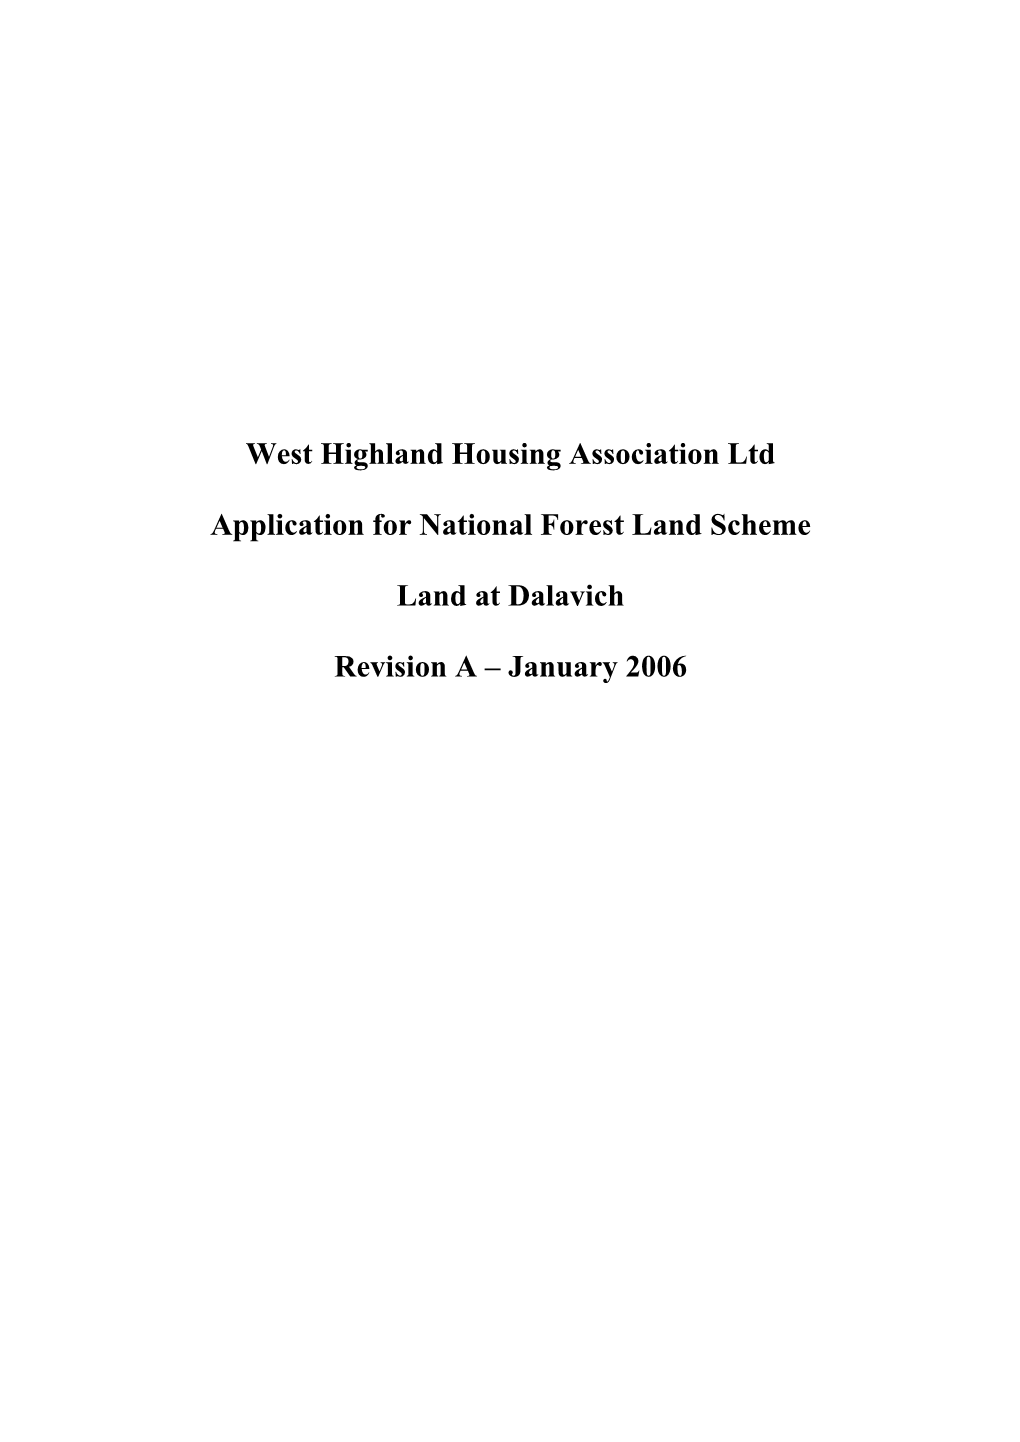 West Highland Housing Association Ltd Application for National Forest